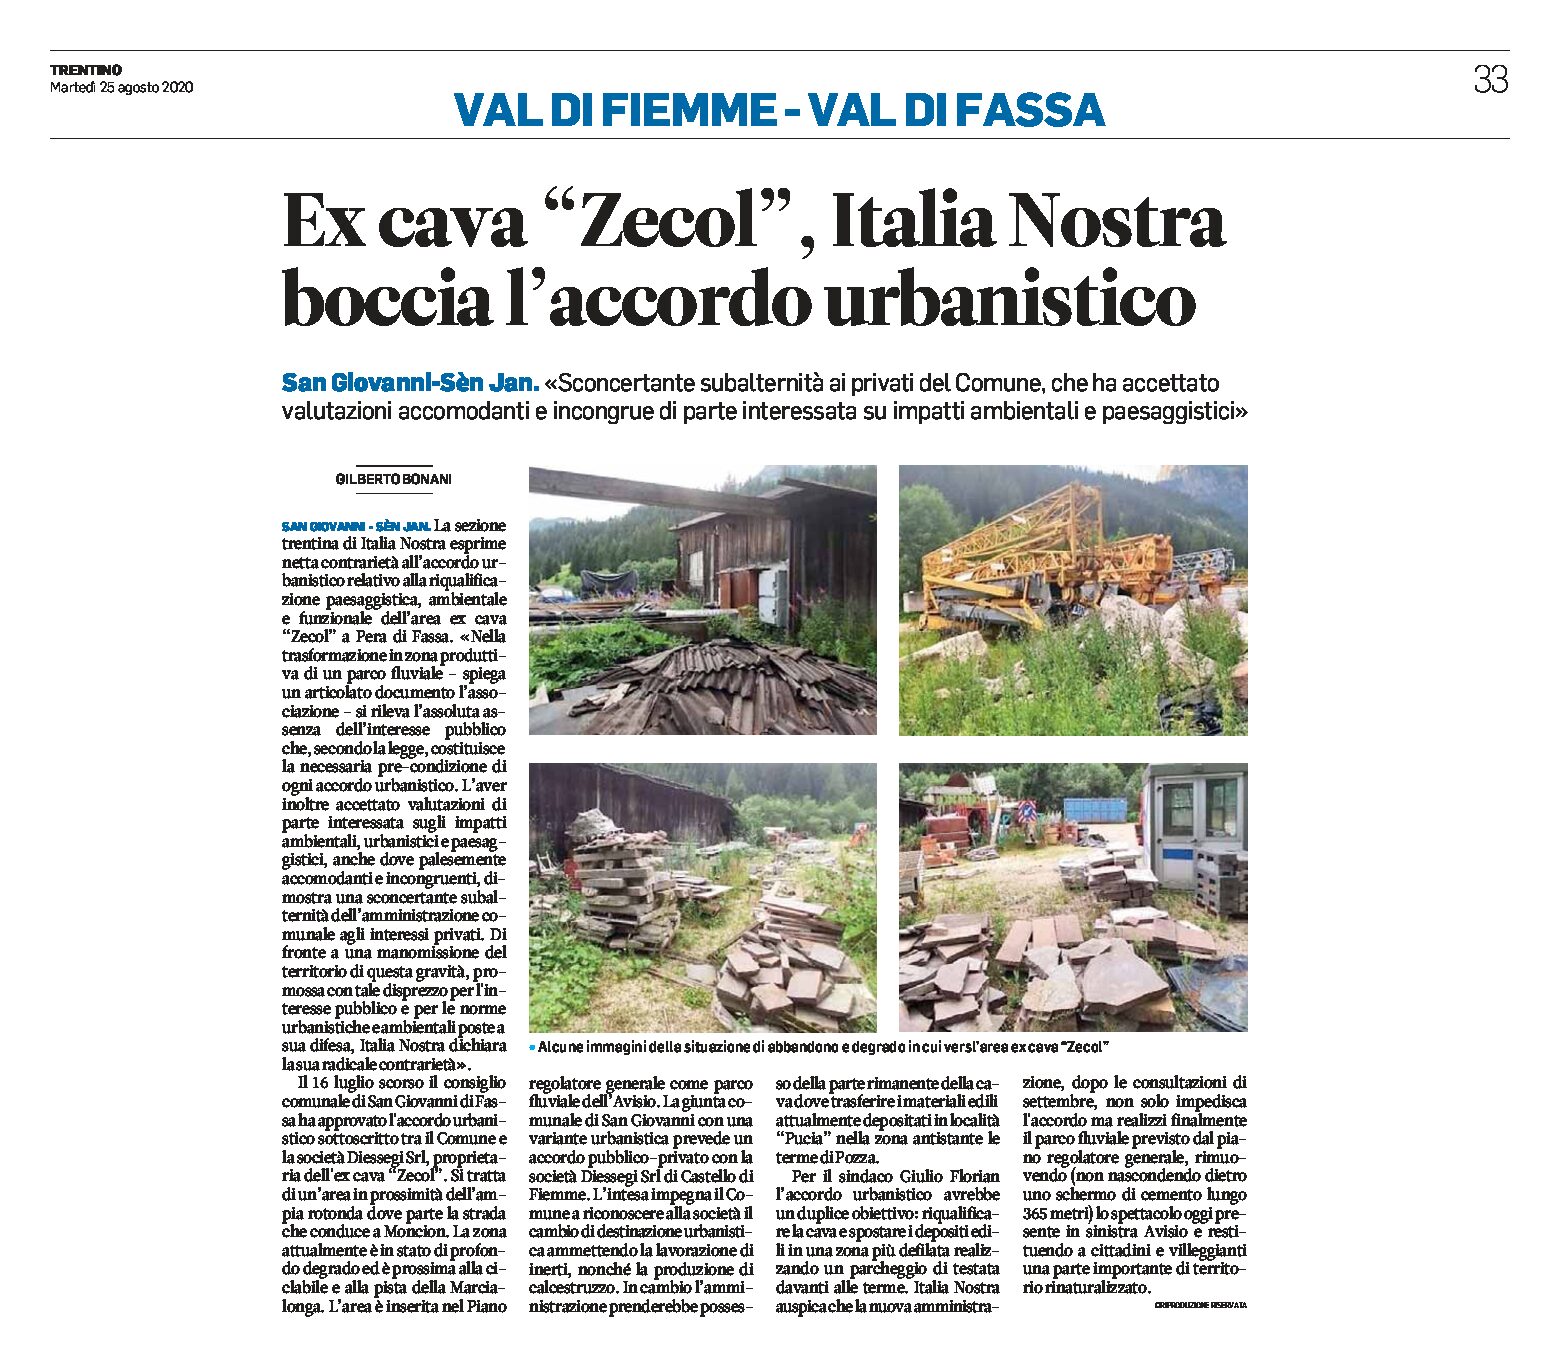 Ex cava Zecol a San Giovanni: Italia Nostra boccia l’accordo urbanistico “sconcertante subalternità del Comune ai privati”